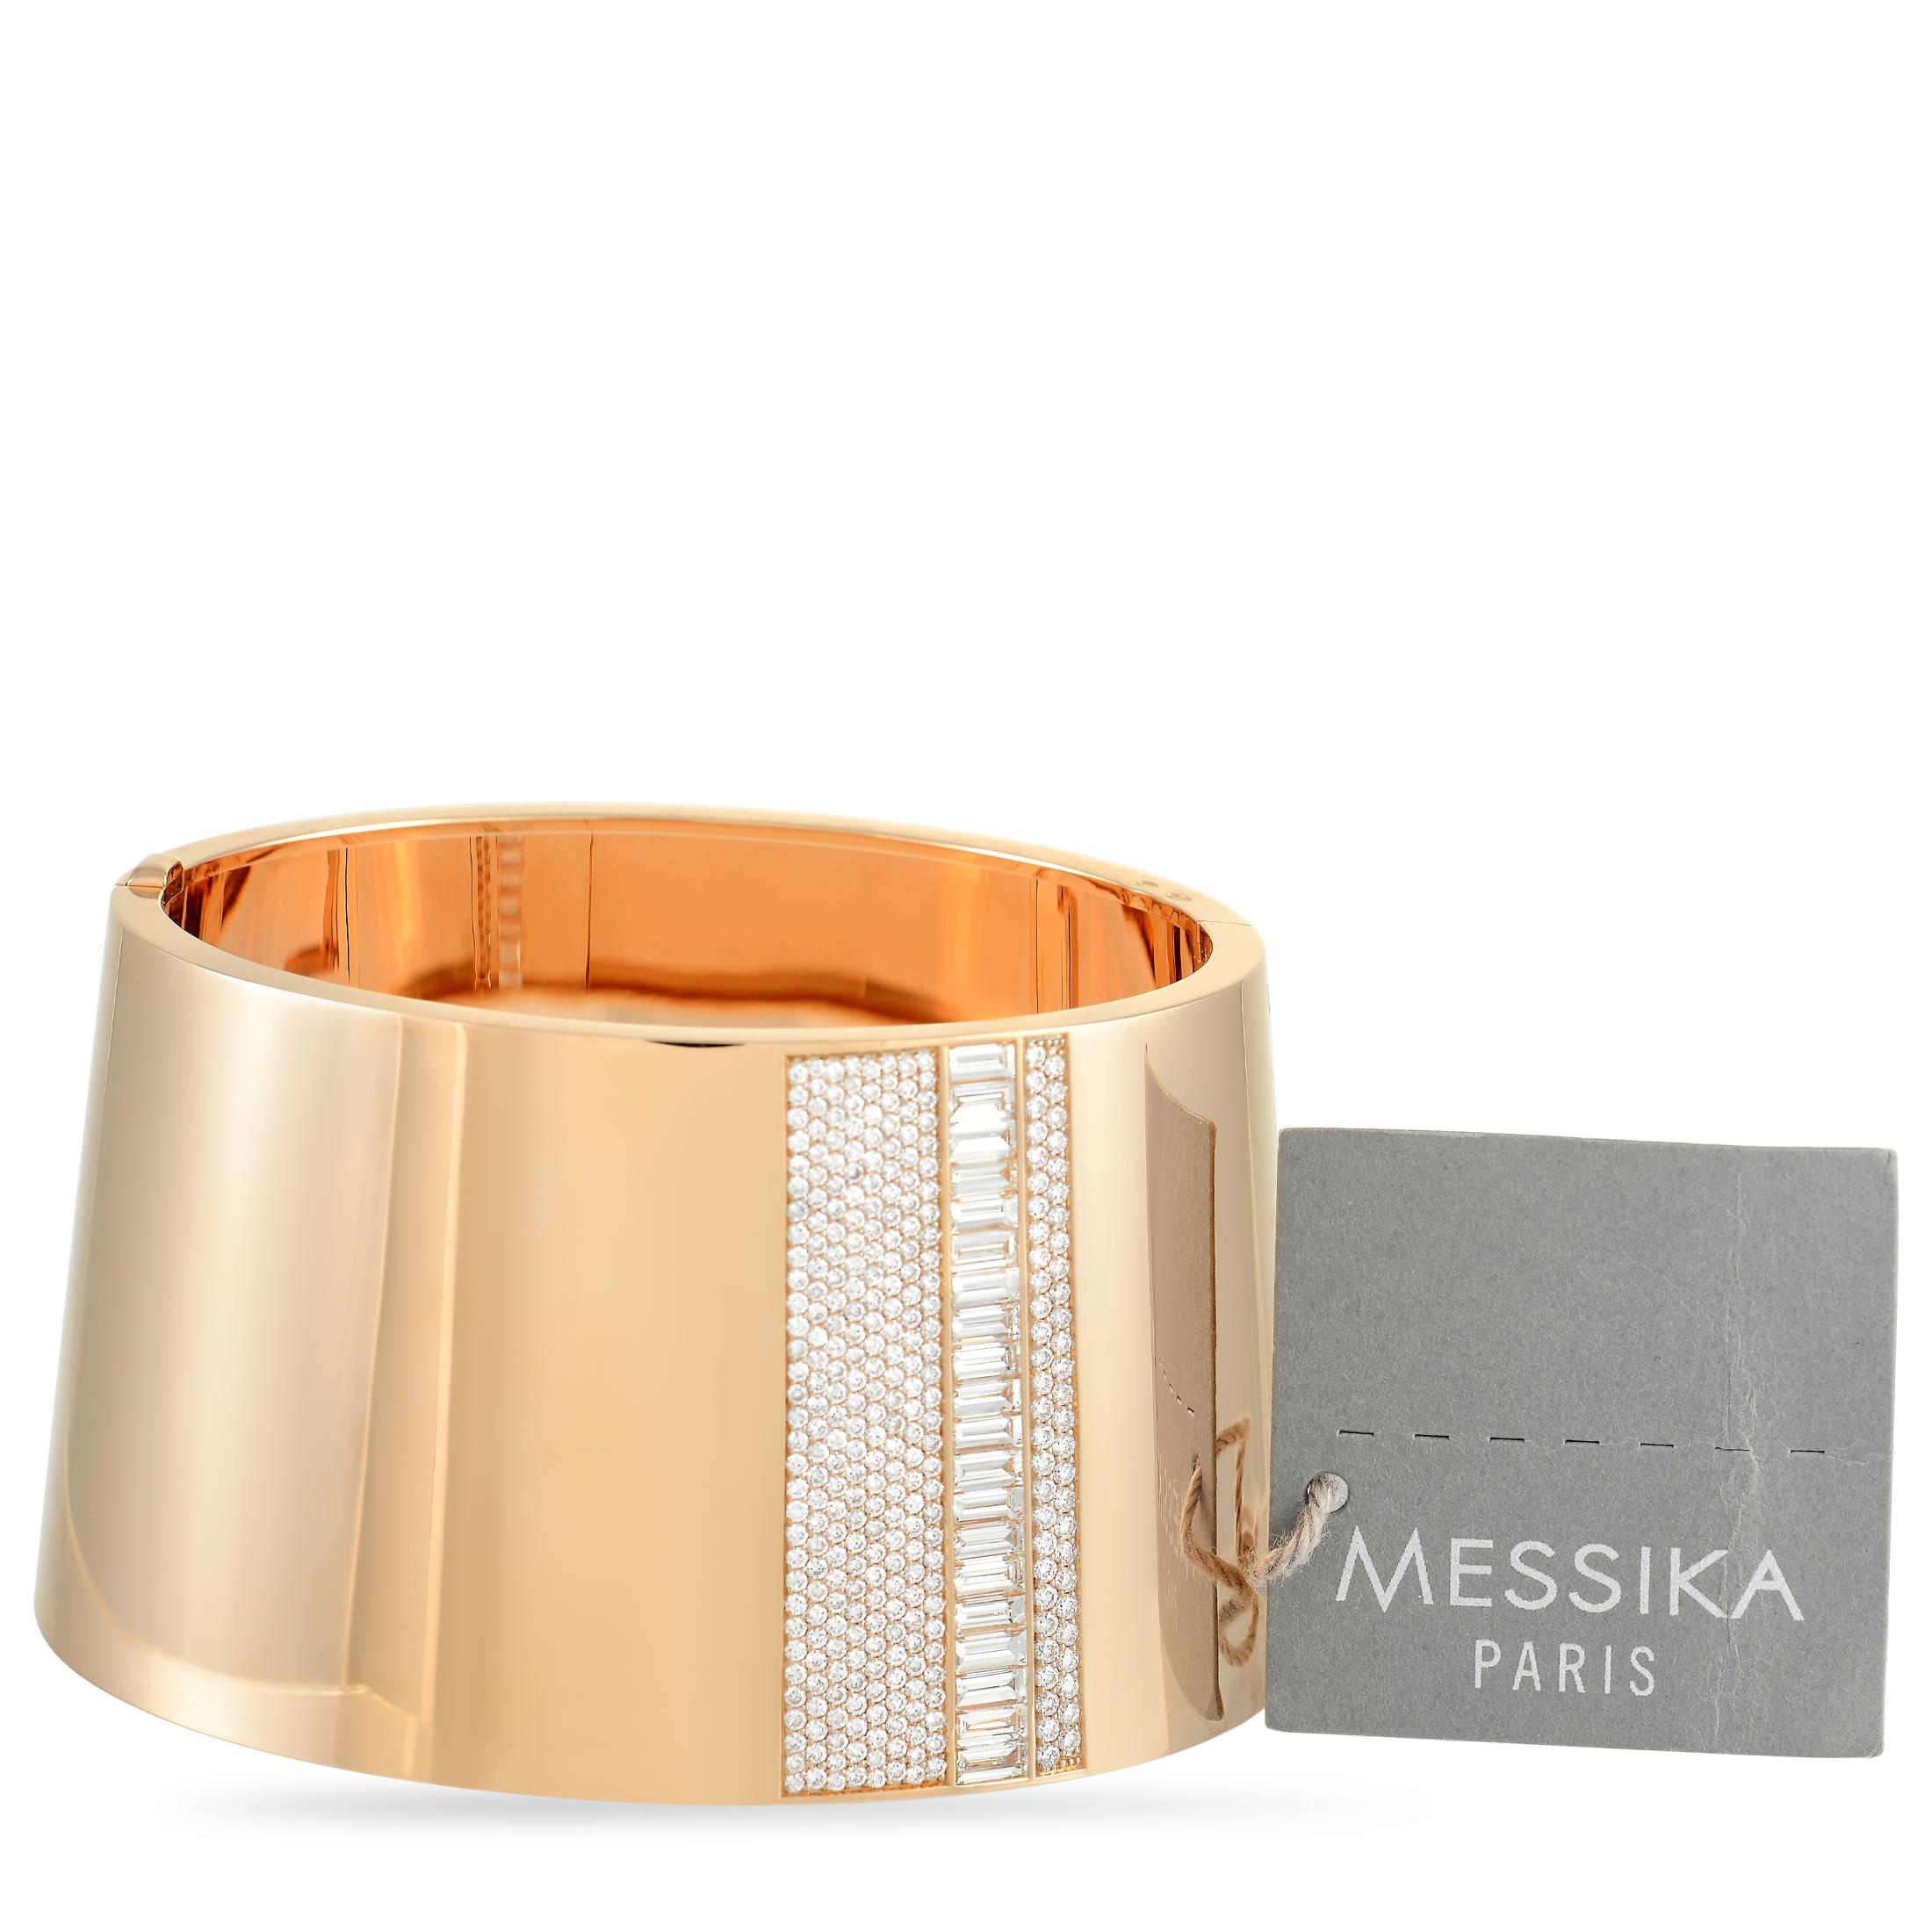 messika rose gold bracelets